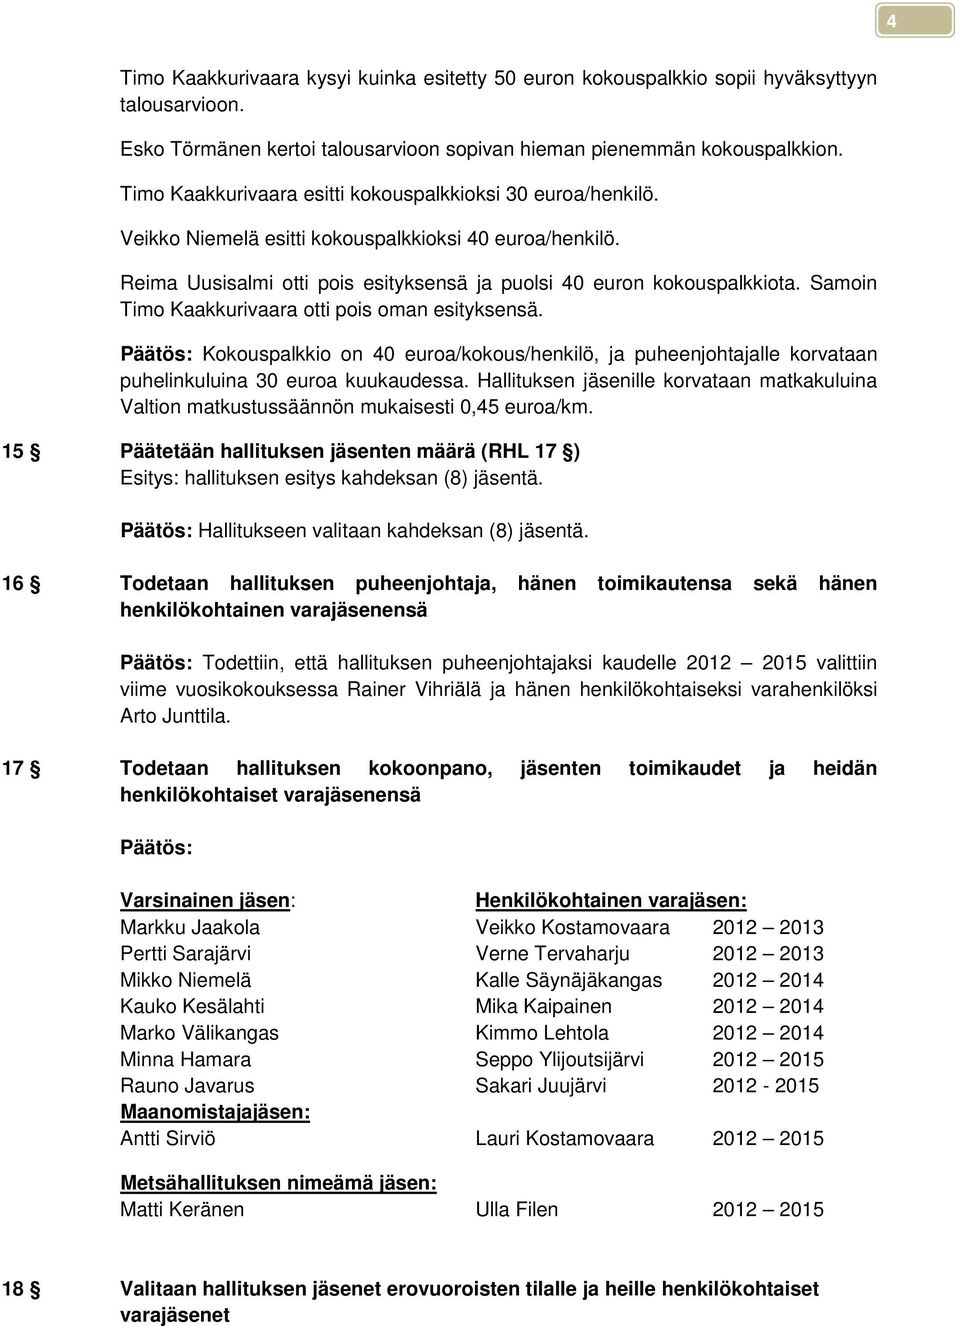 Samoin Timo Kaakkurivaara otti pois oman esityksensä. Päätös: Kokouspalkkio on 40 euroa/kokous/henkilö, ja puheenjohtajalle korvataan puhelinkuluina 30 euroa kuukaudessa.